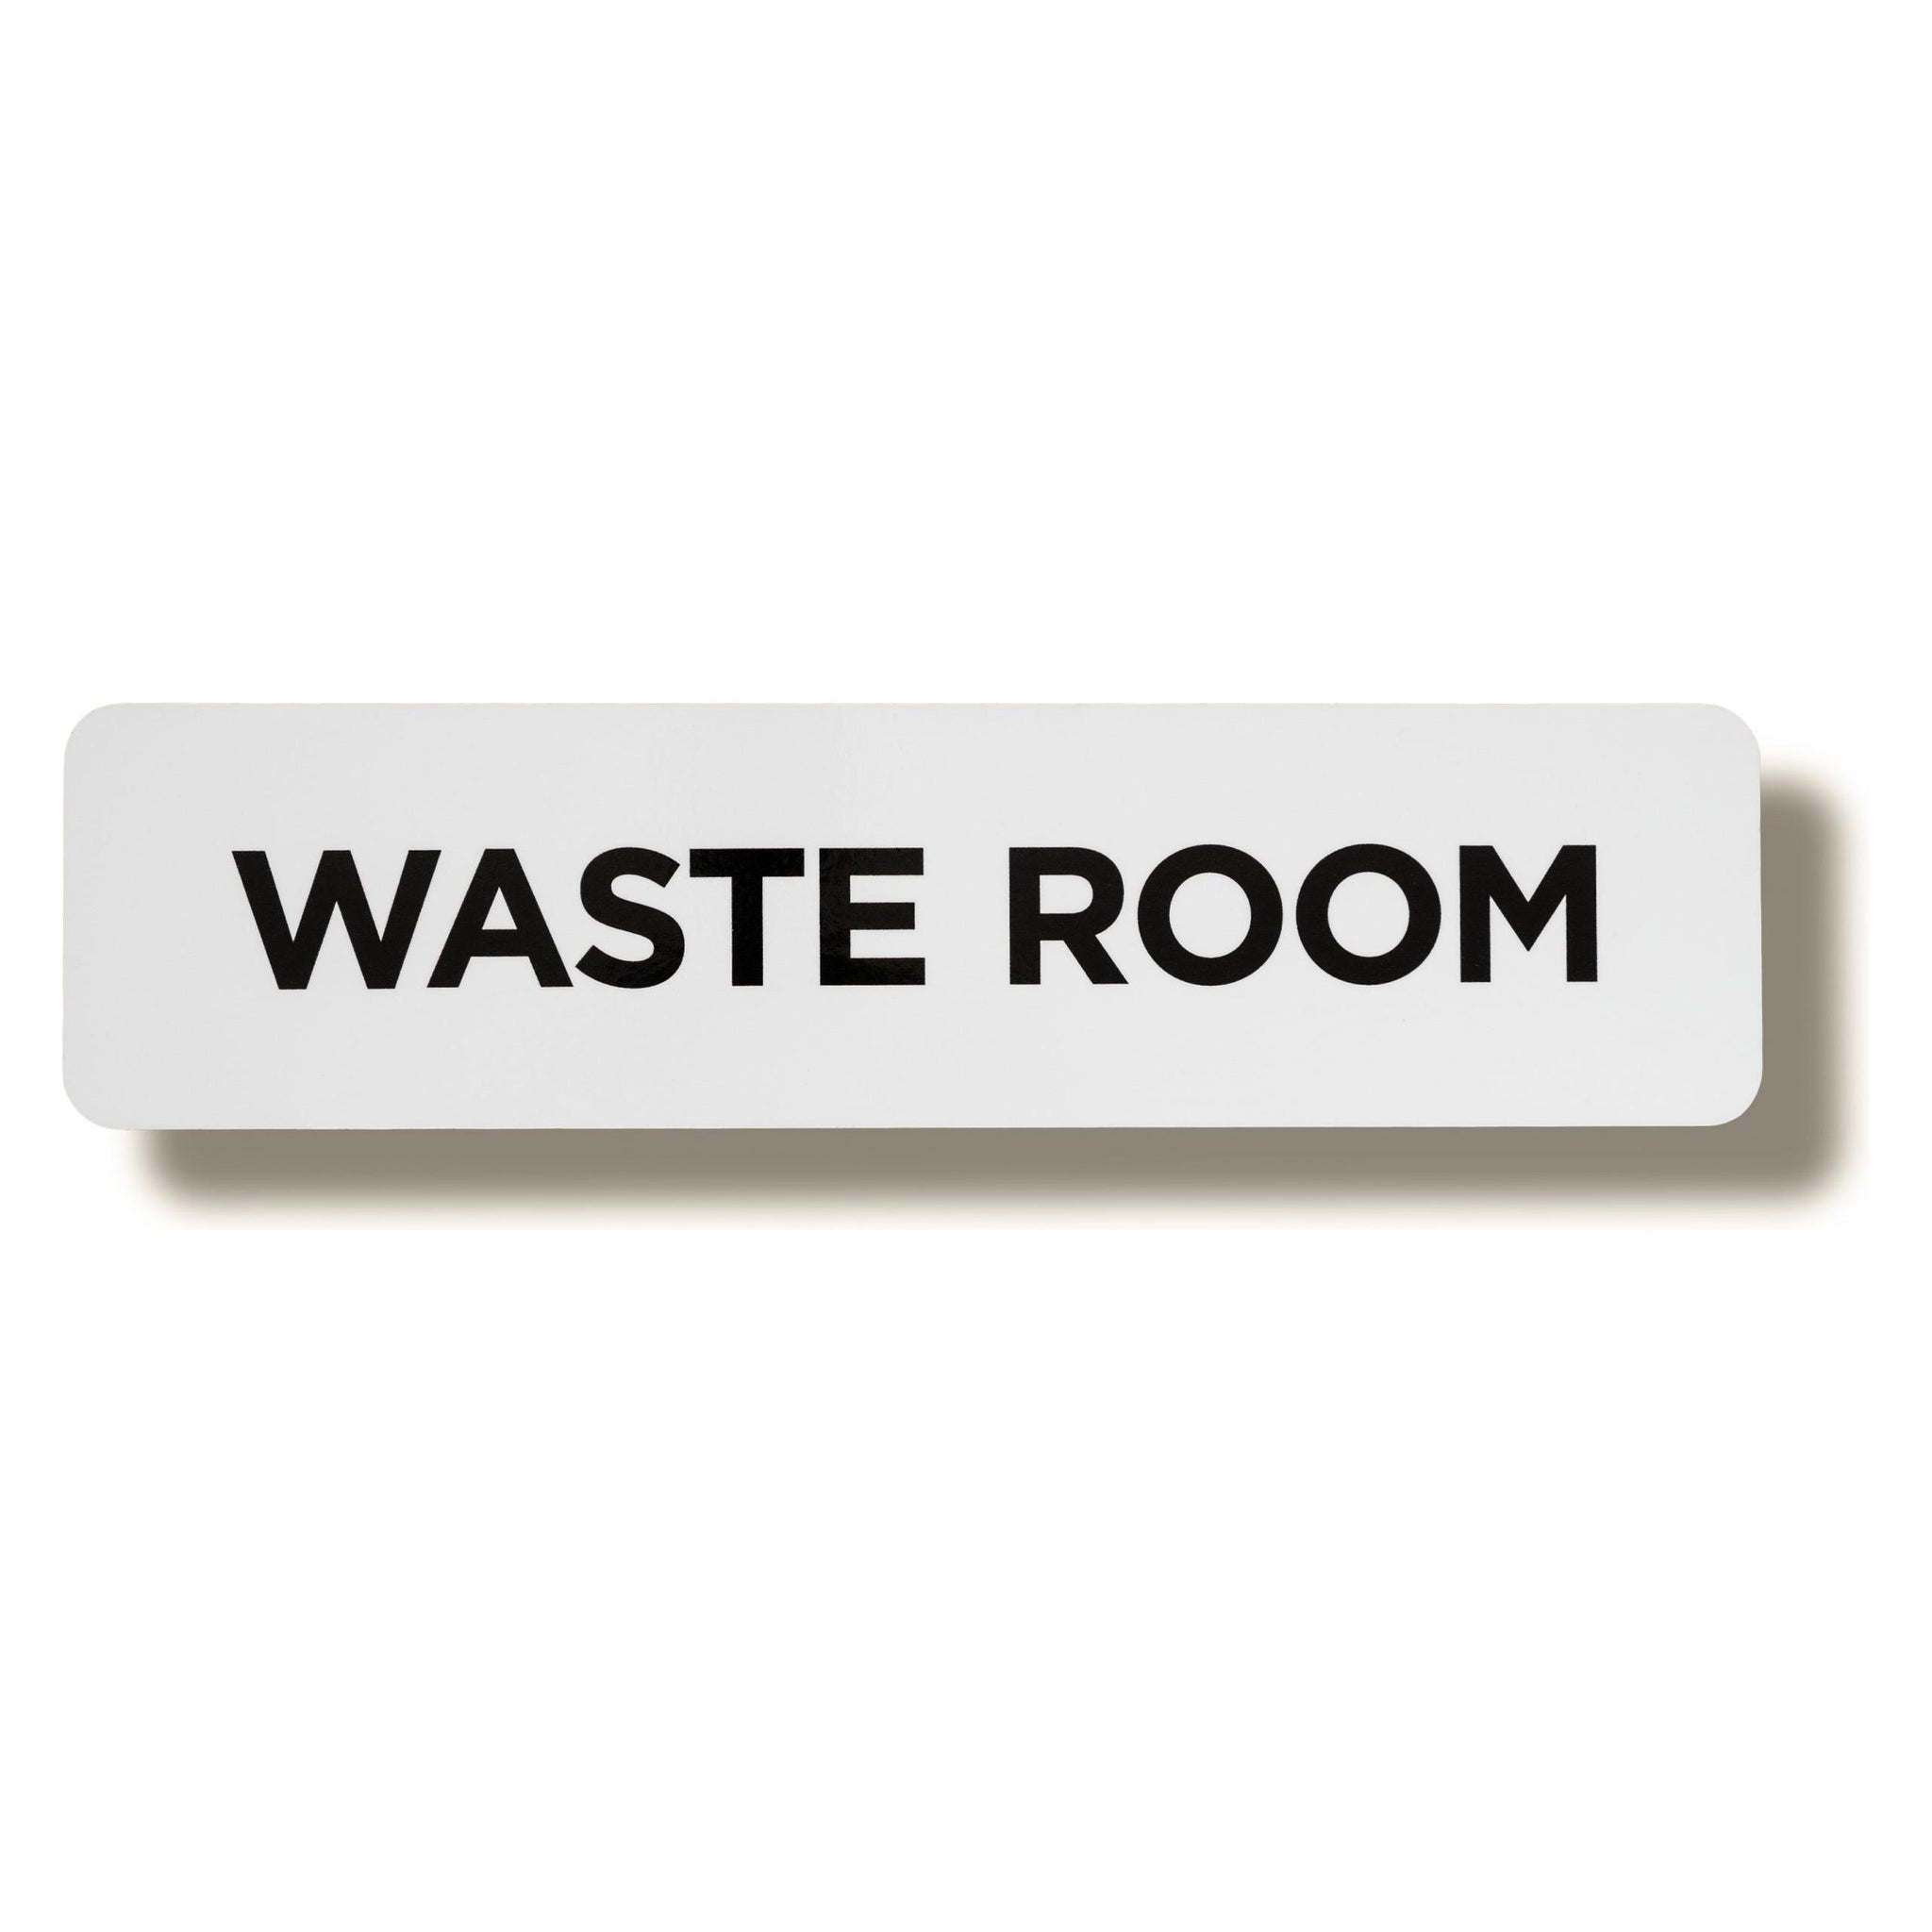 waste room sign